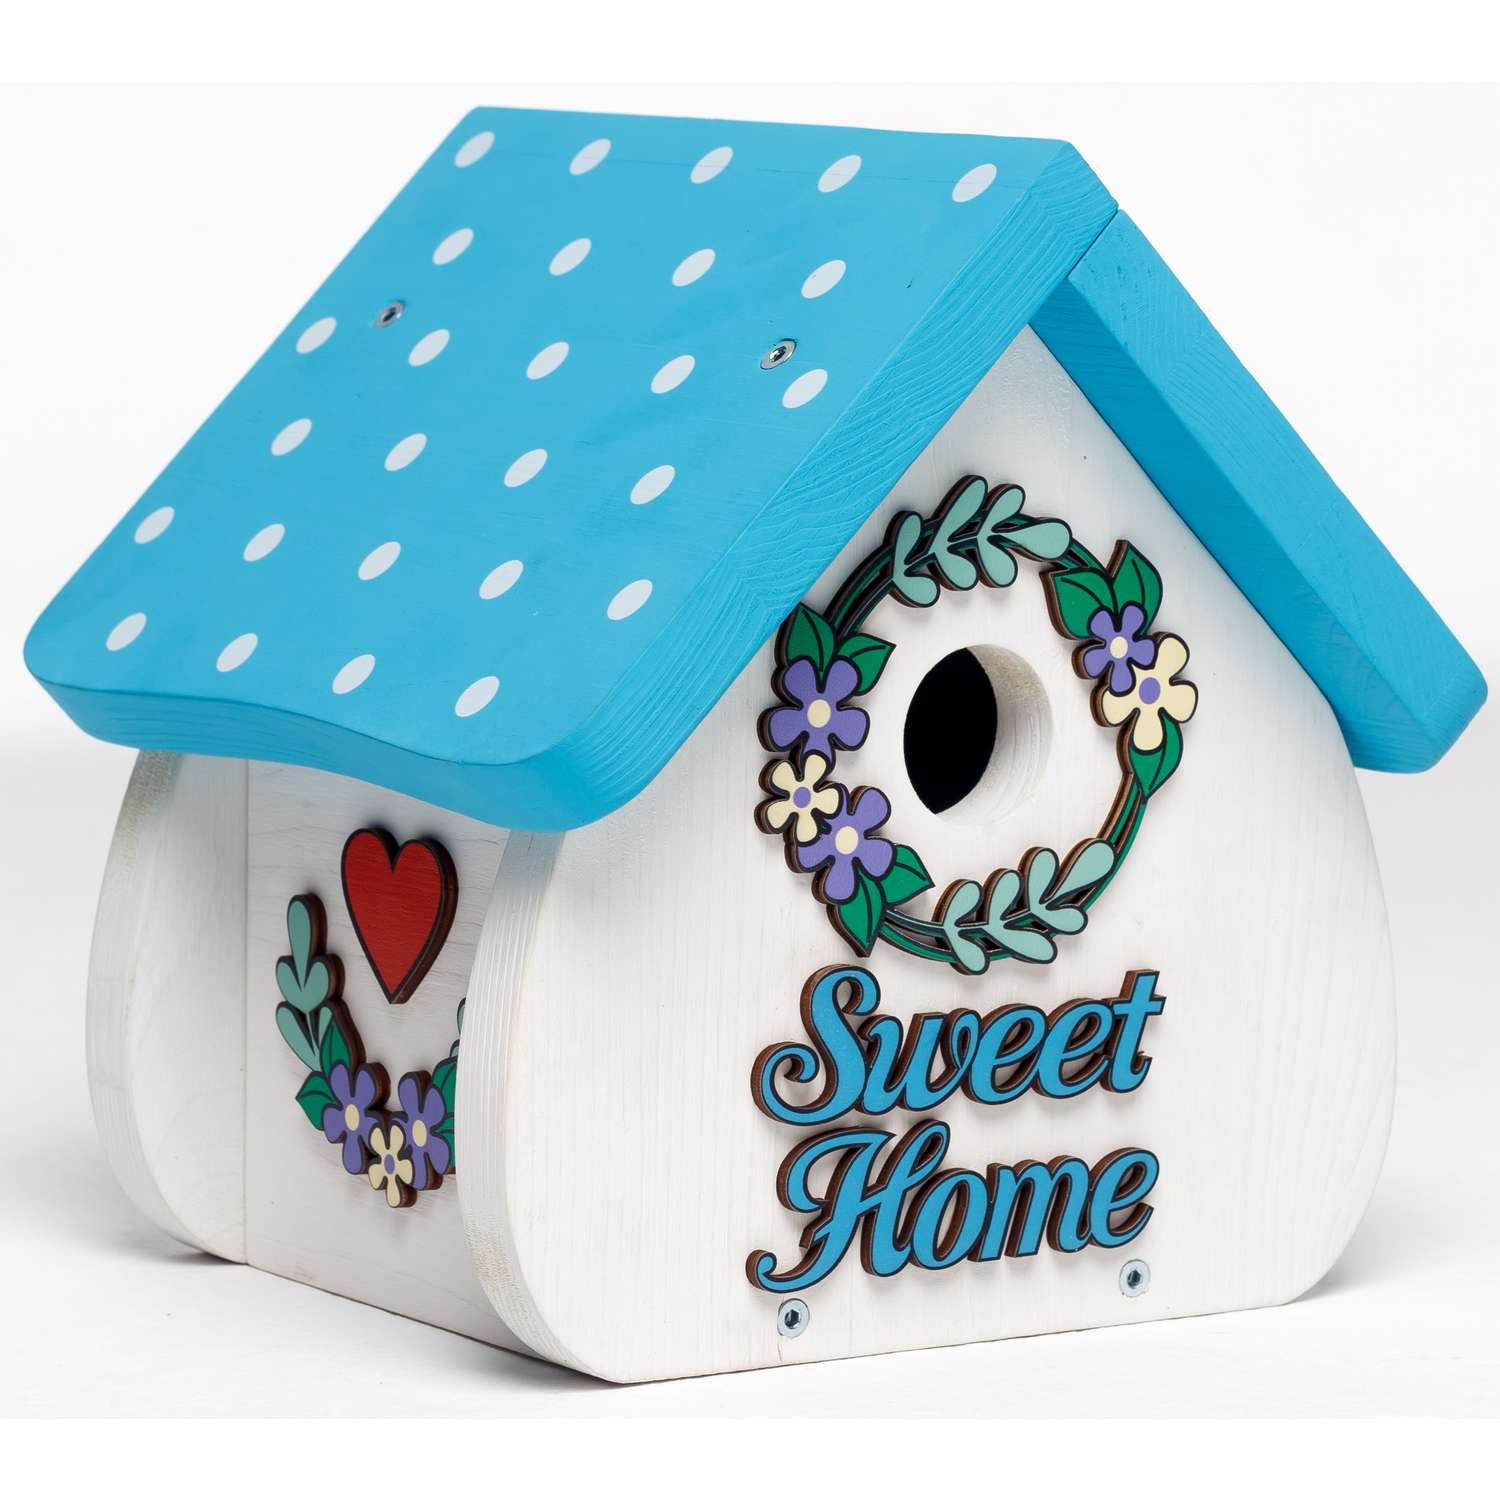 Скворечник Sweet home WOODING design набор с красками - фото 6